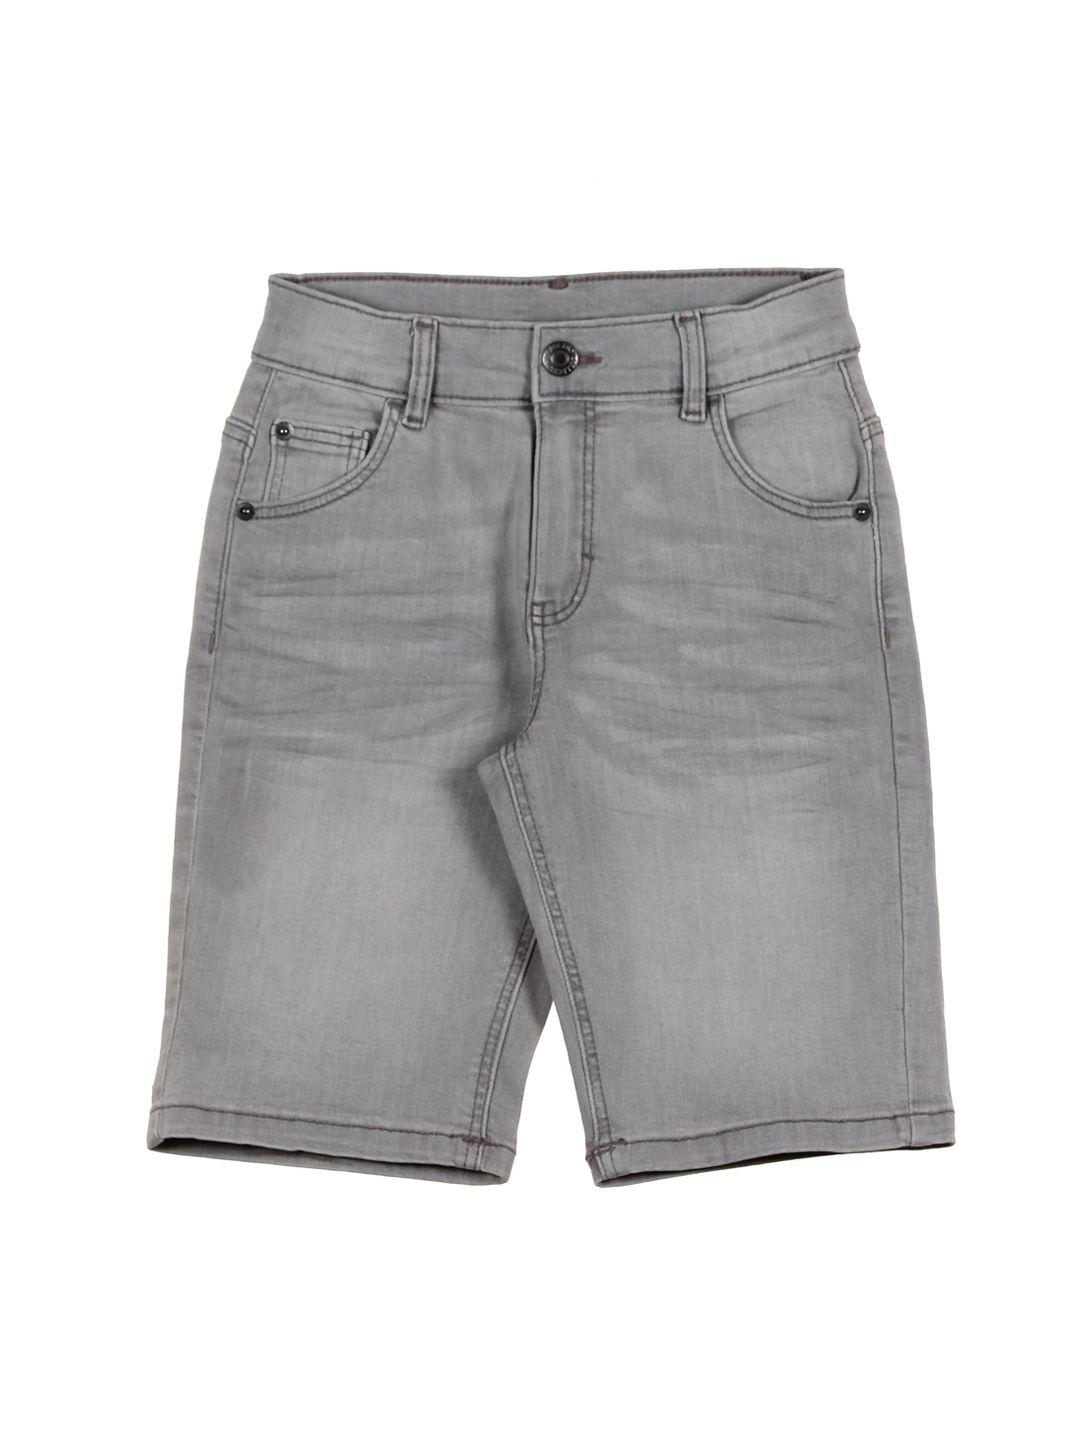 lil lollipop unisex kids grey washed denim outdoor denim shorts